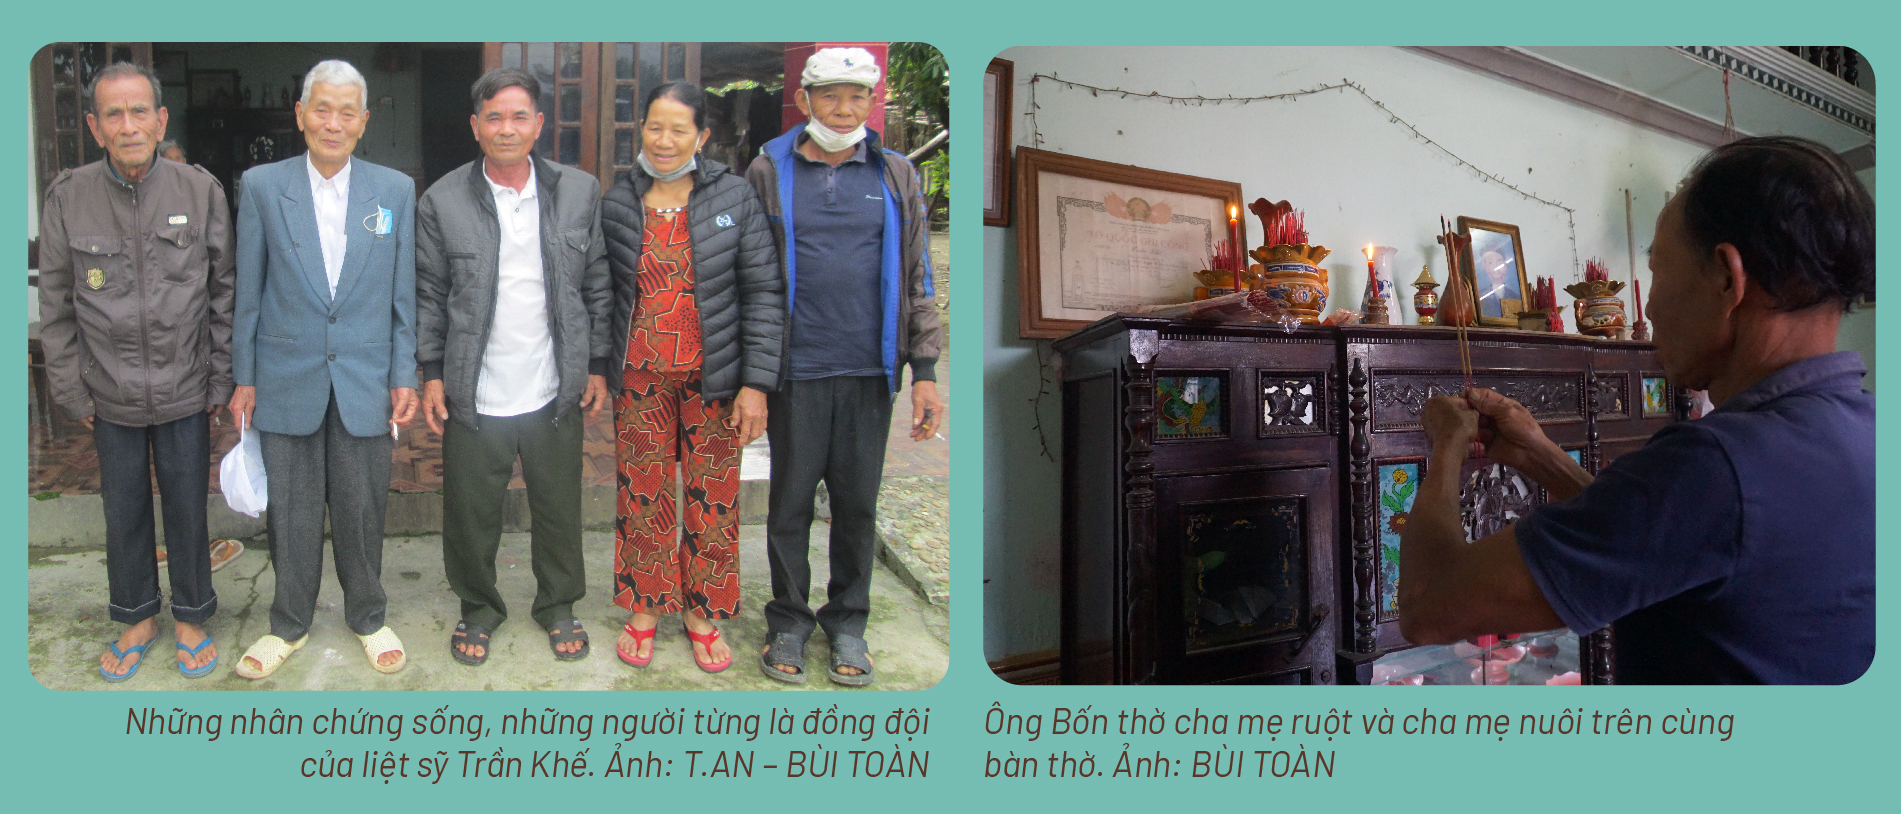 Hành trình gần 50 năm đi tìm em gái sau chiến tranh ở Quảng Nam - ảnh 8